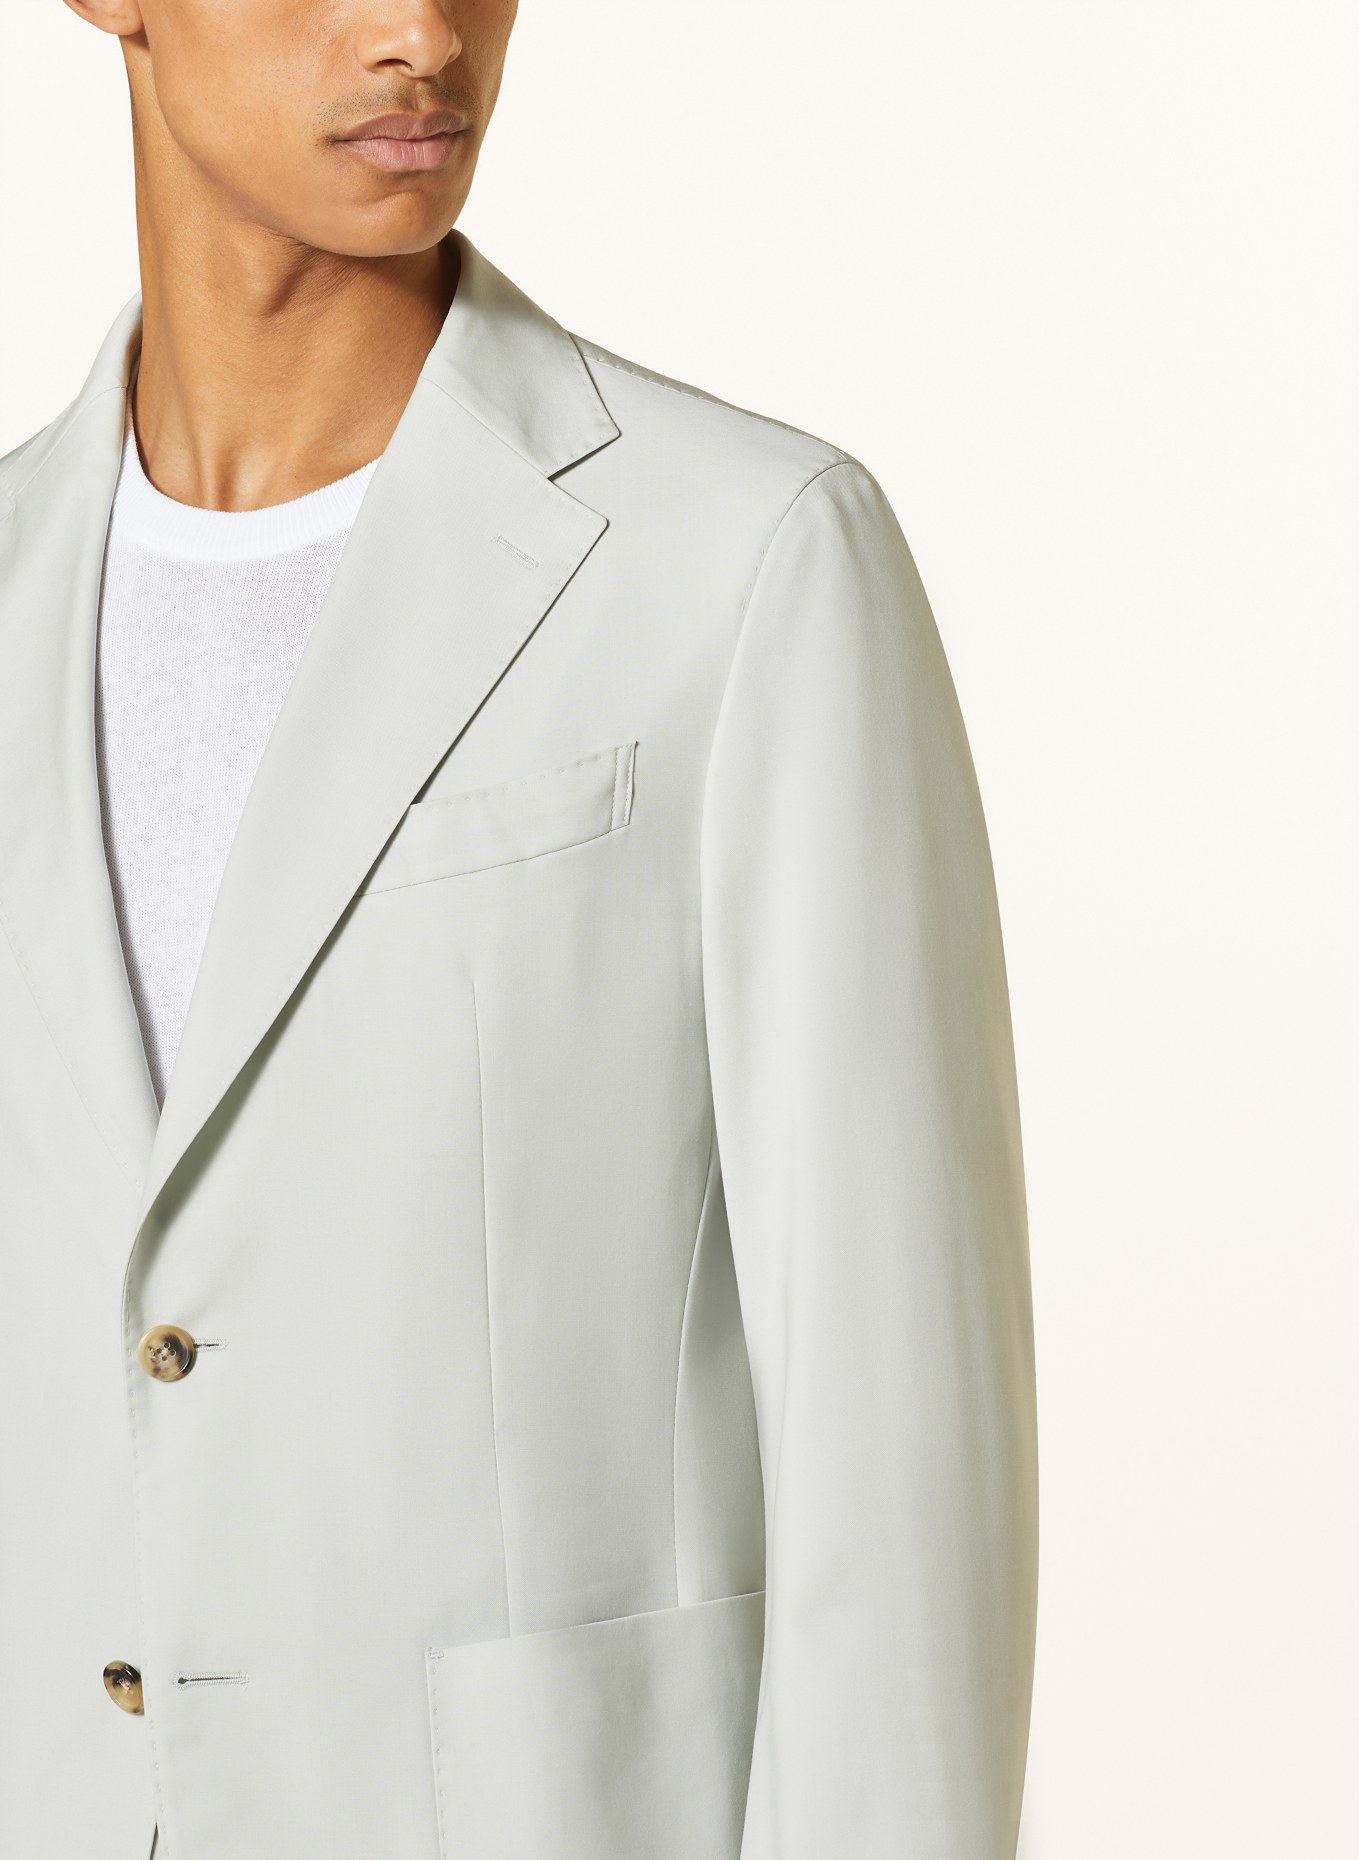 windsor. Suit jacket TRAVEL shaped Fit, Color: 330 Lt/Pastel Green            330 (Image 5)